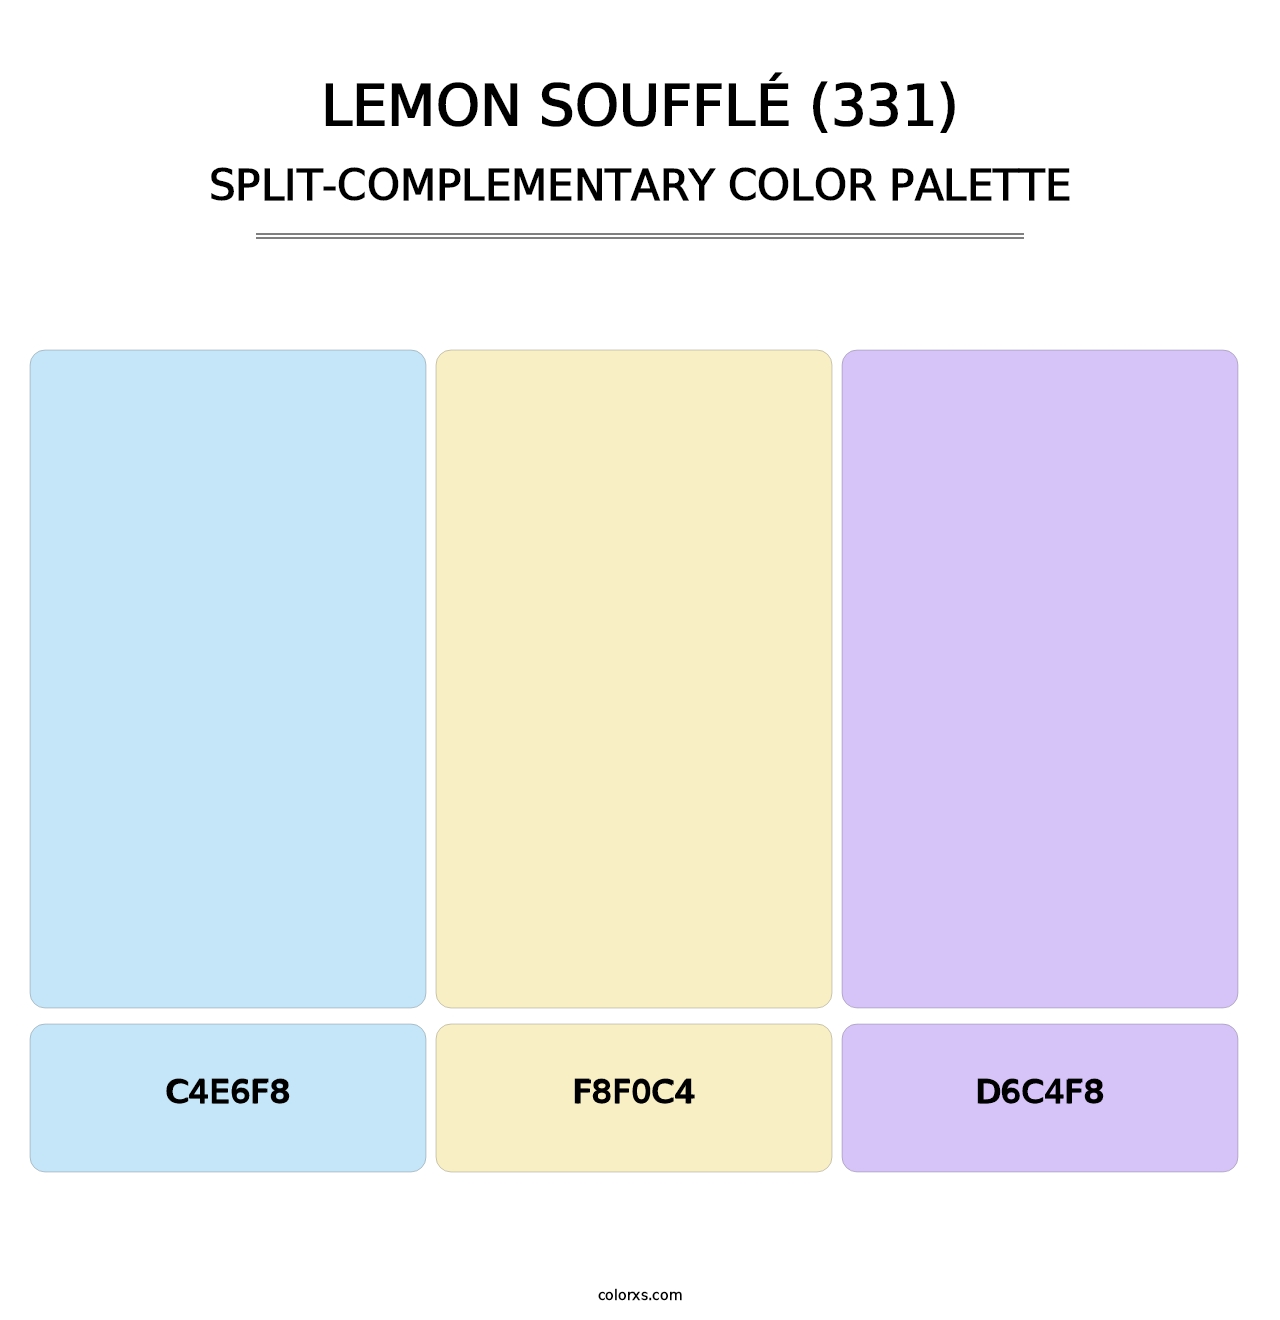 Lemon Soufflé (331) - Split-Complementary Color Palette